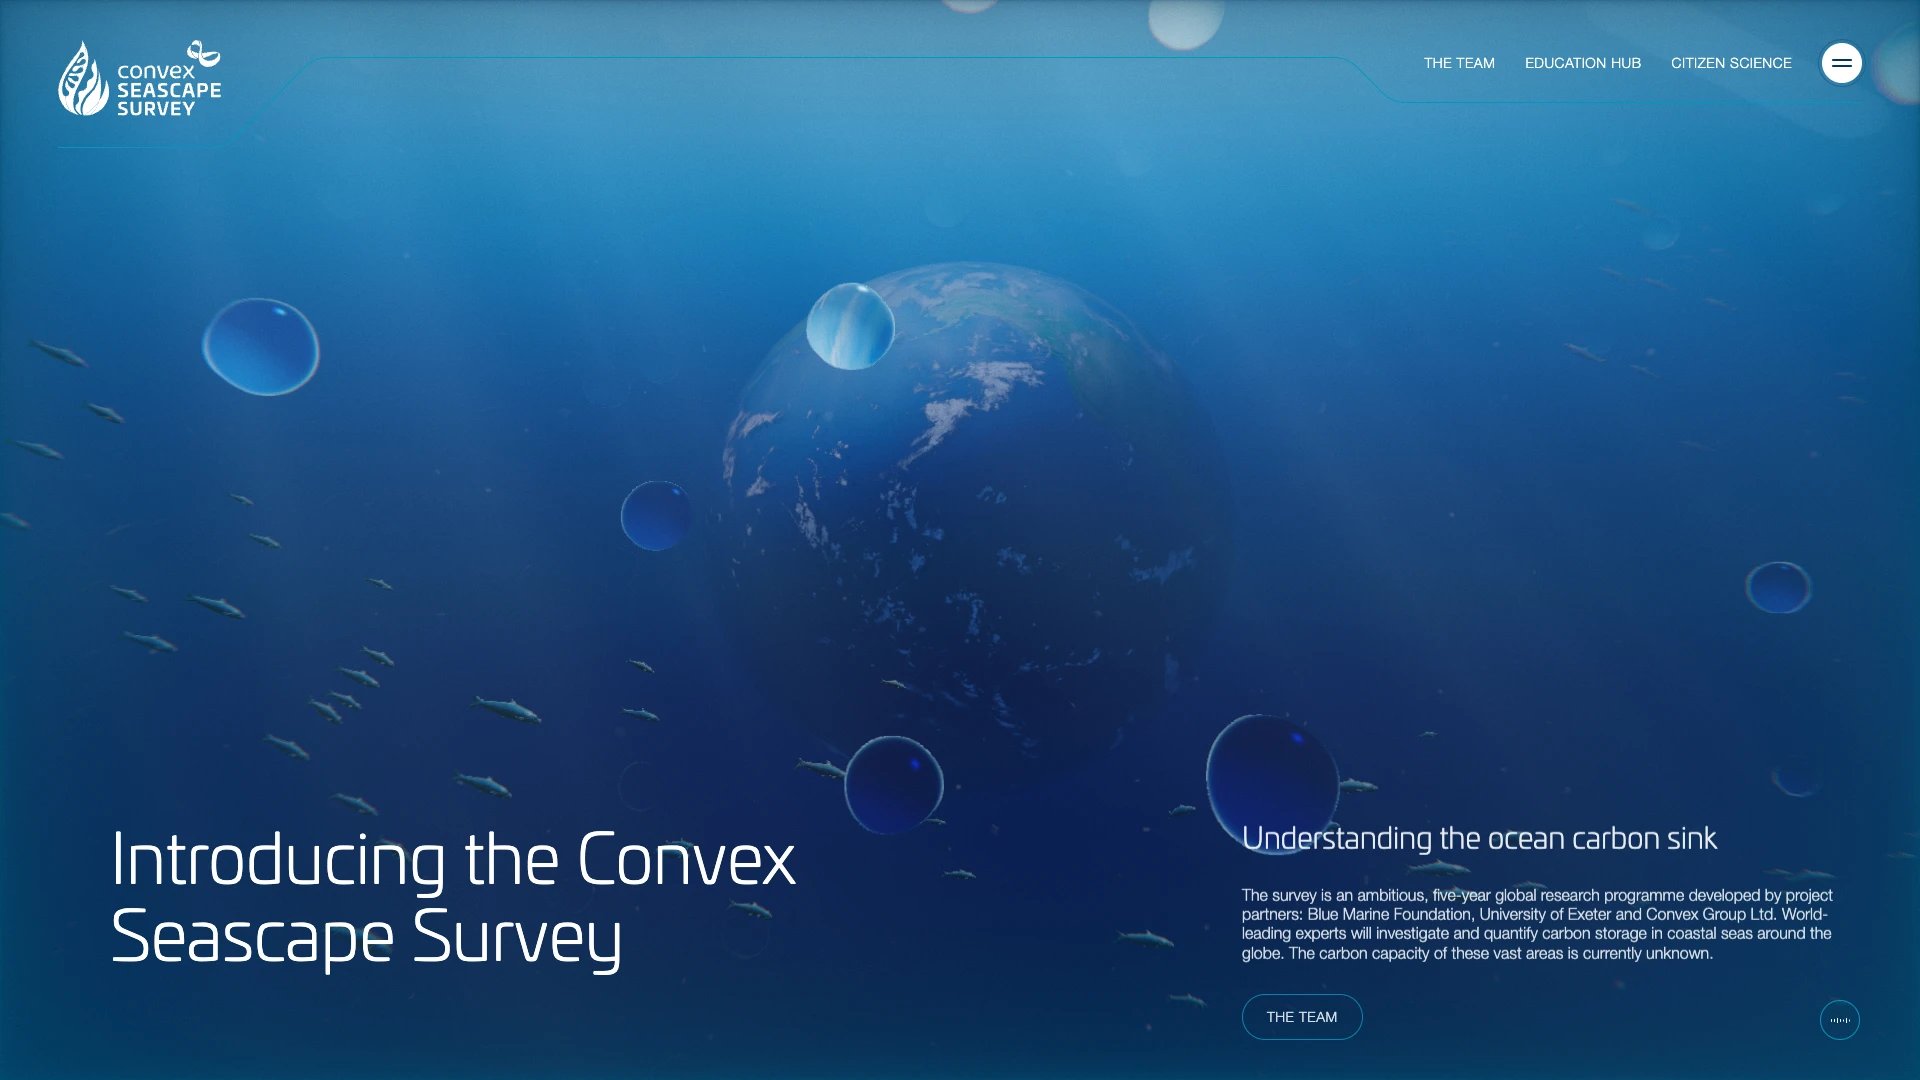 The Convex Seascape Survey